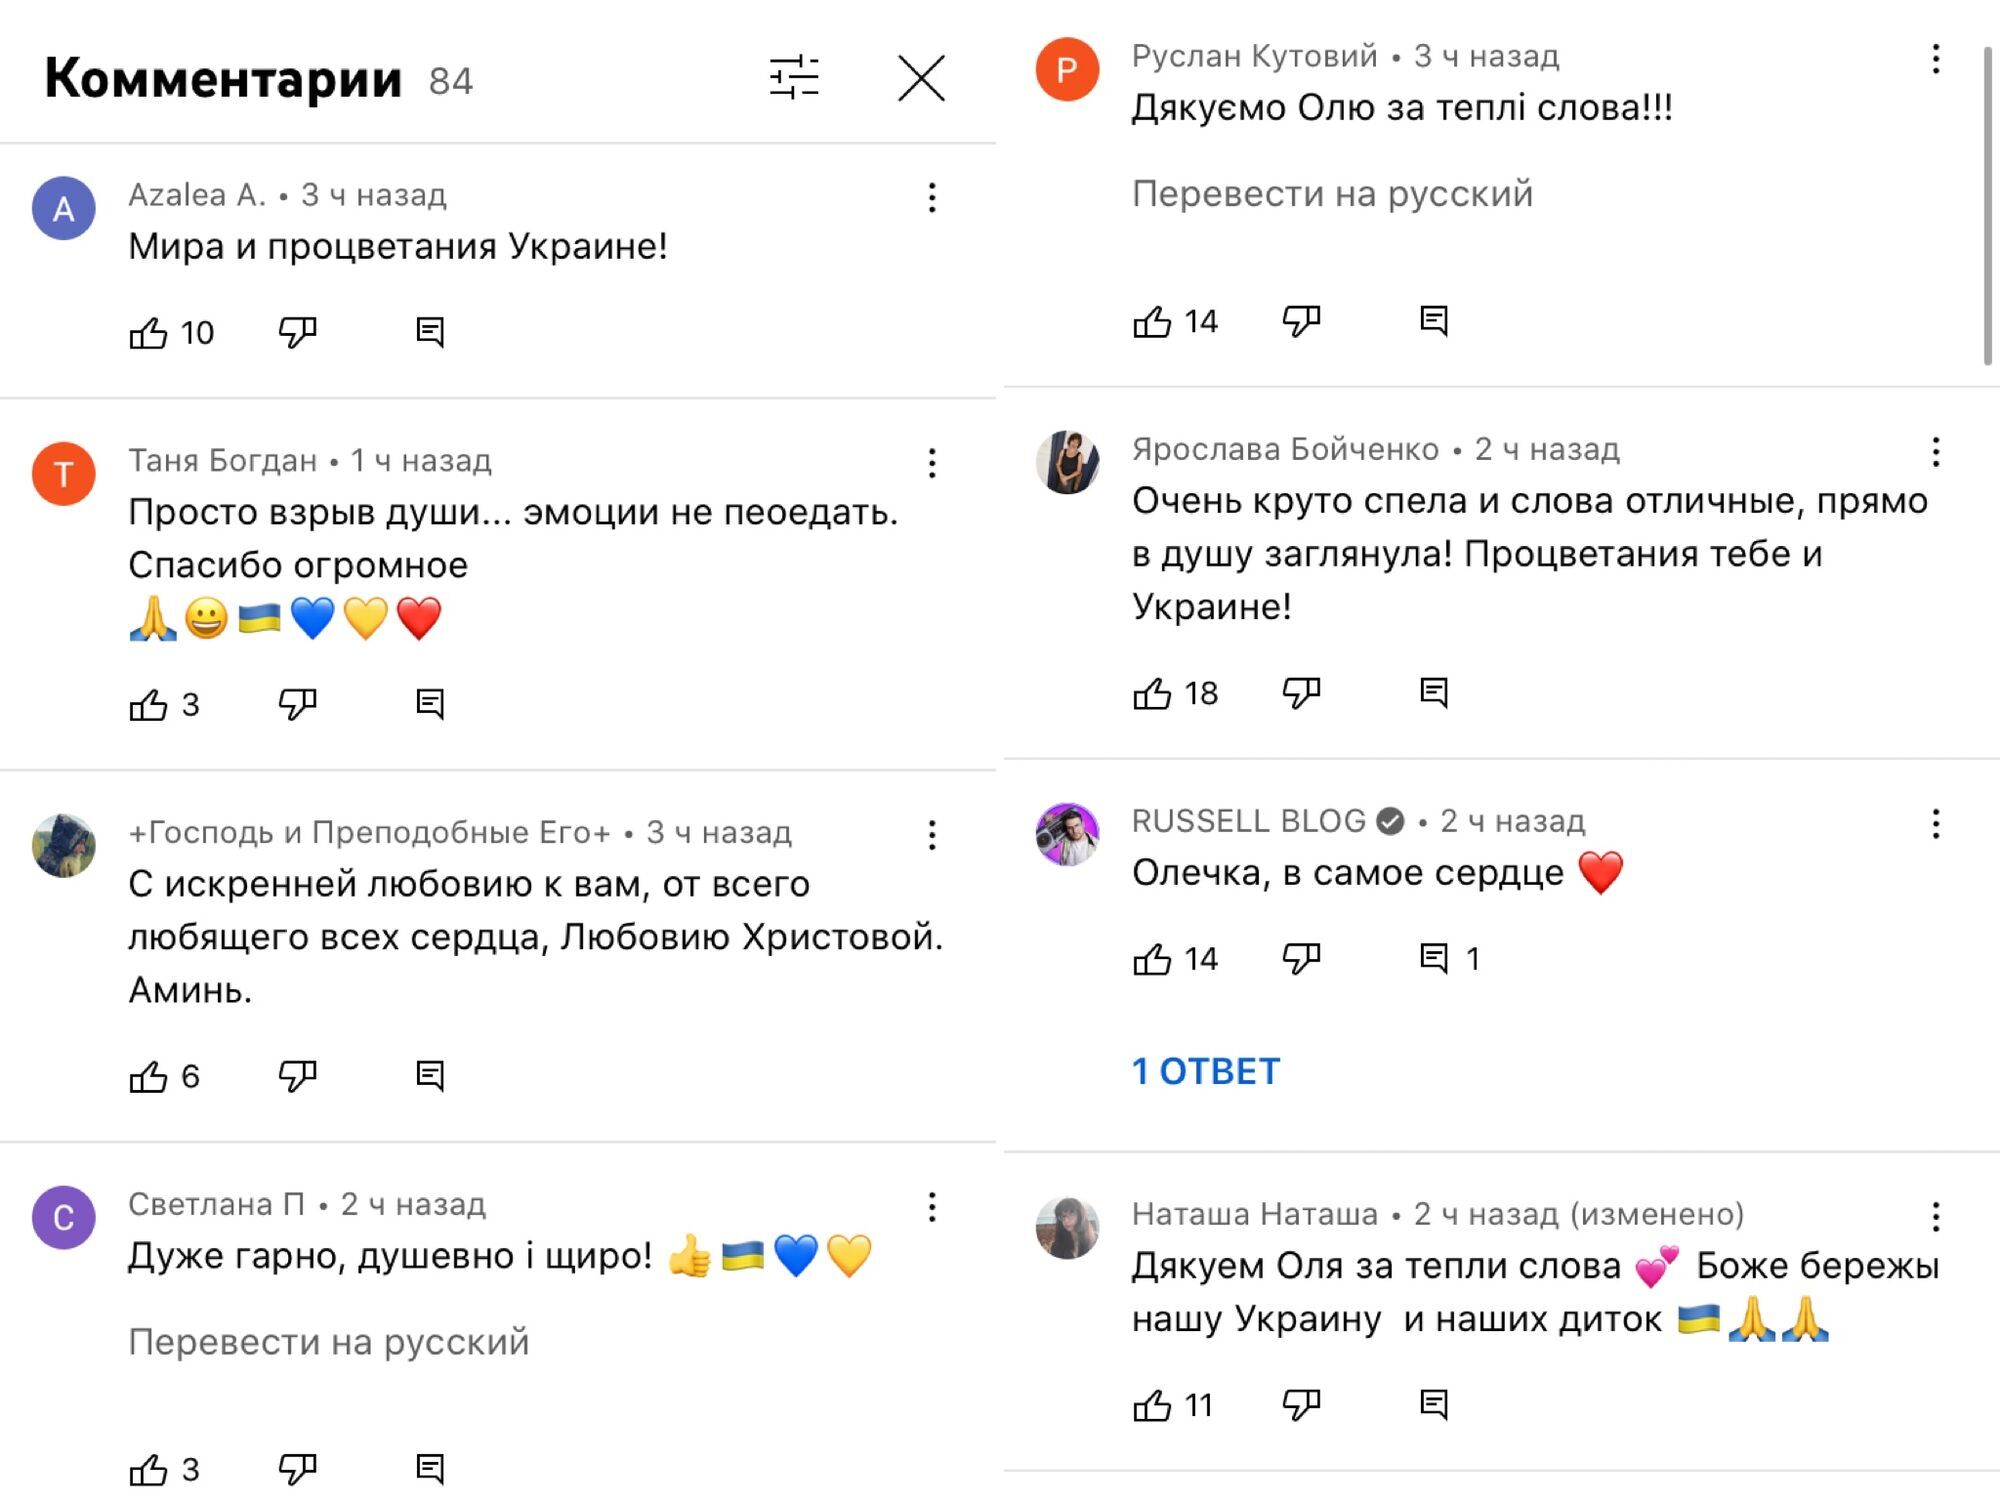 Коментарі під новим кліпом Олі Полякової